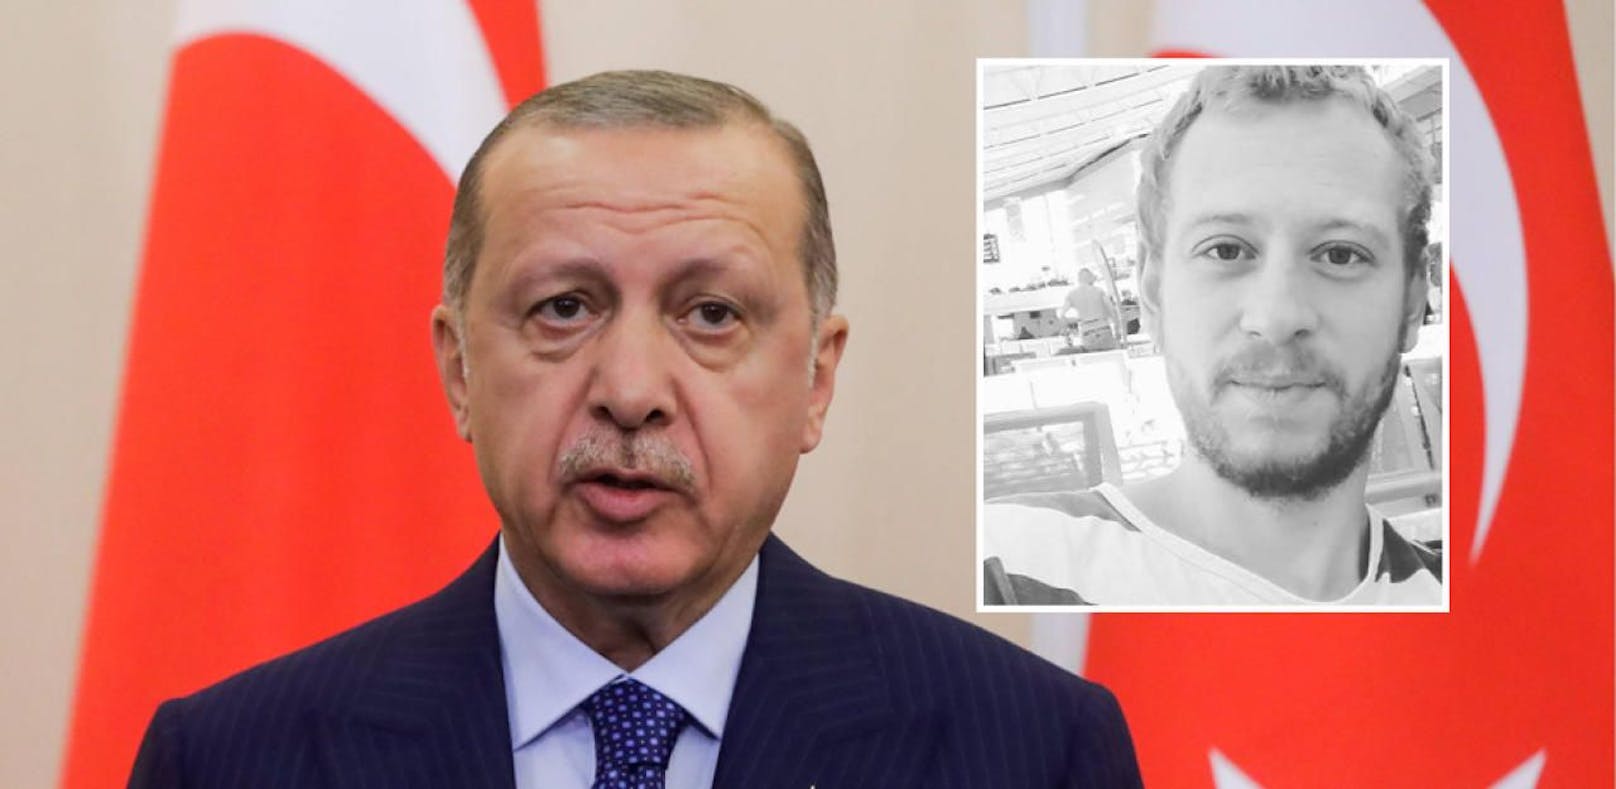 Der türkische Präsident Recep Tayyip Erdogan (l.) hat zahlreiche Journalisten wie Max Zirngast in der Türkei verhaften lassen.